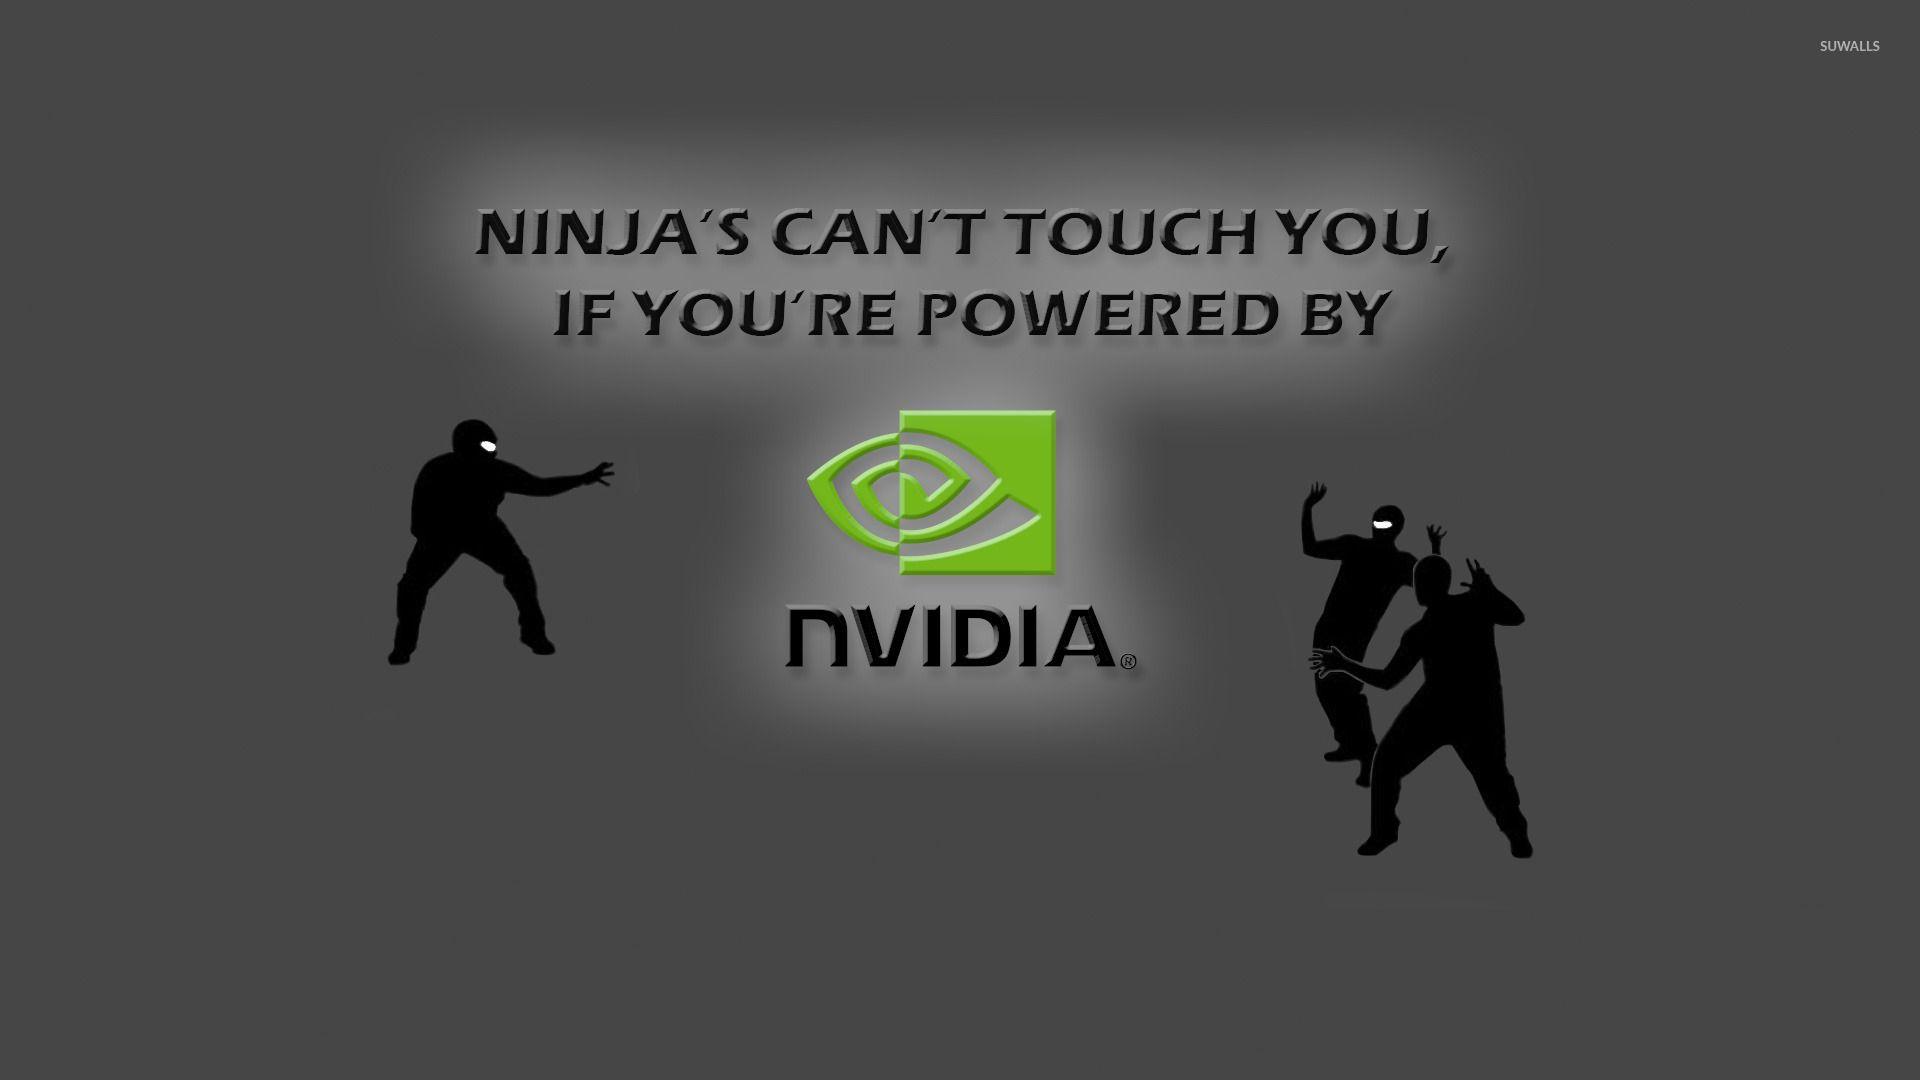 Ninjas vs Nvidia wallpaper wallpaper